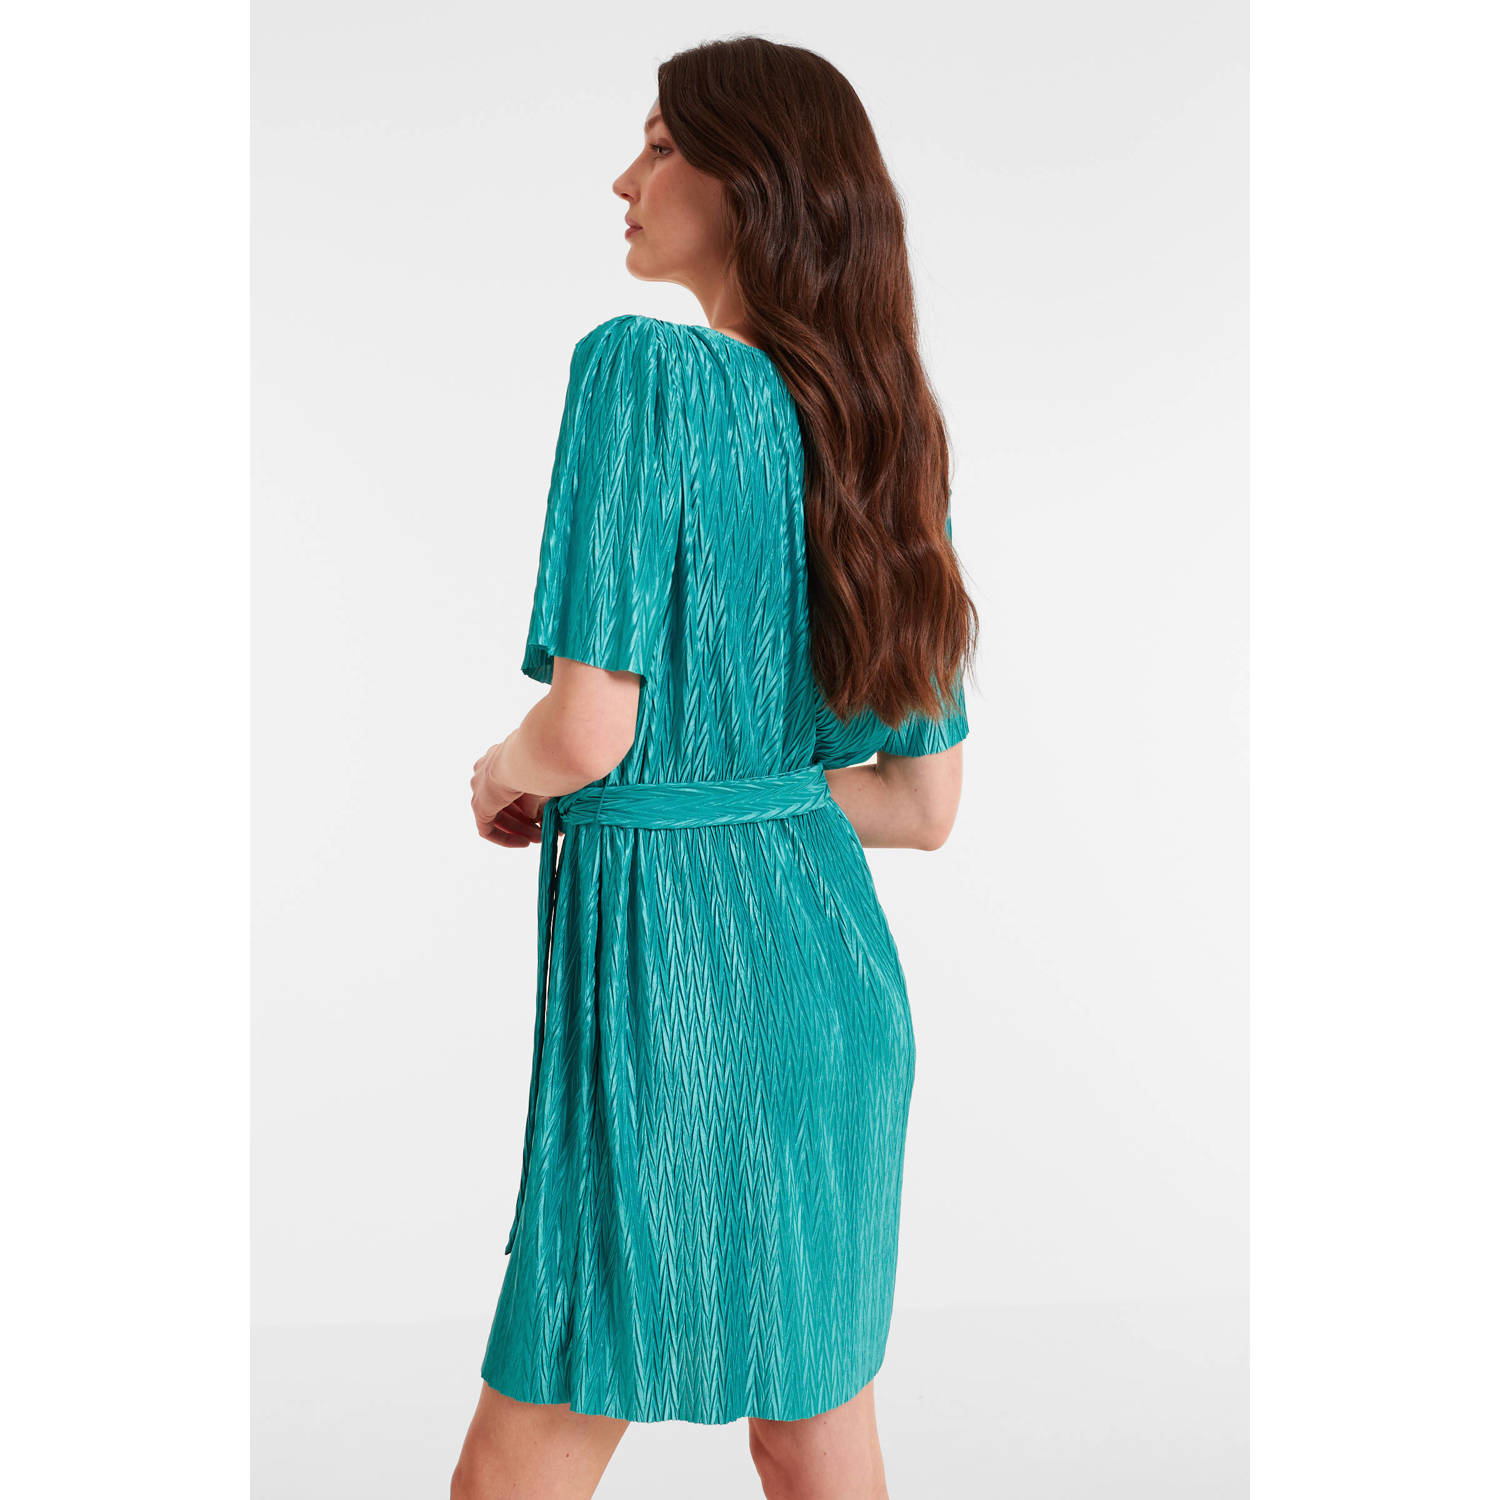 VILA jurk VIPLUSA turquoise